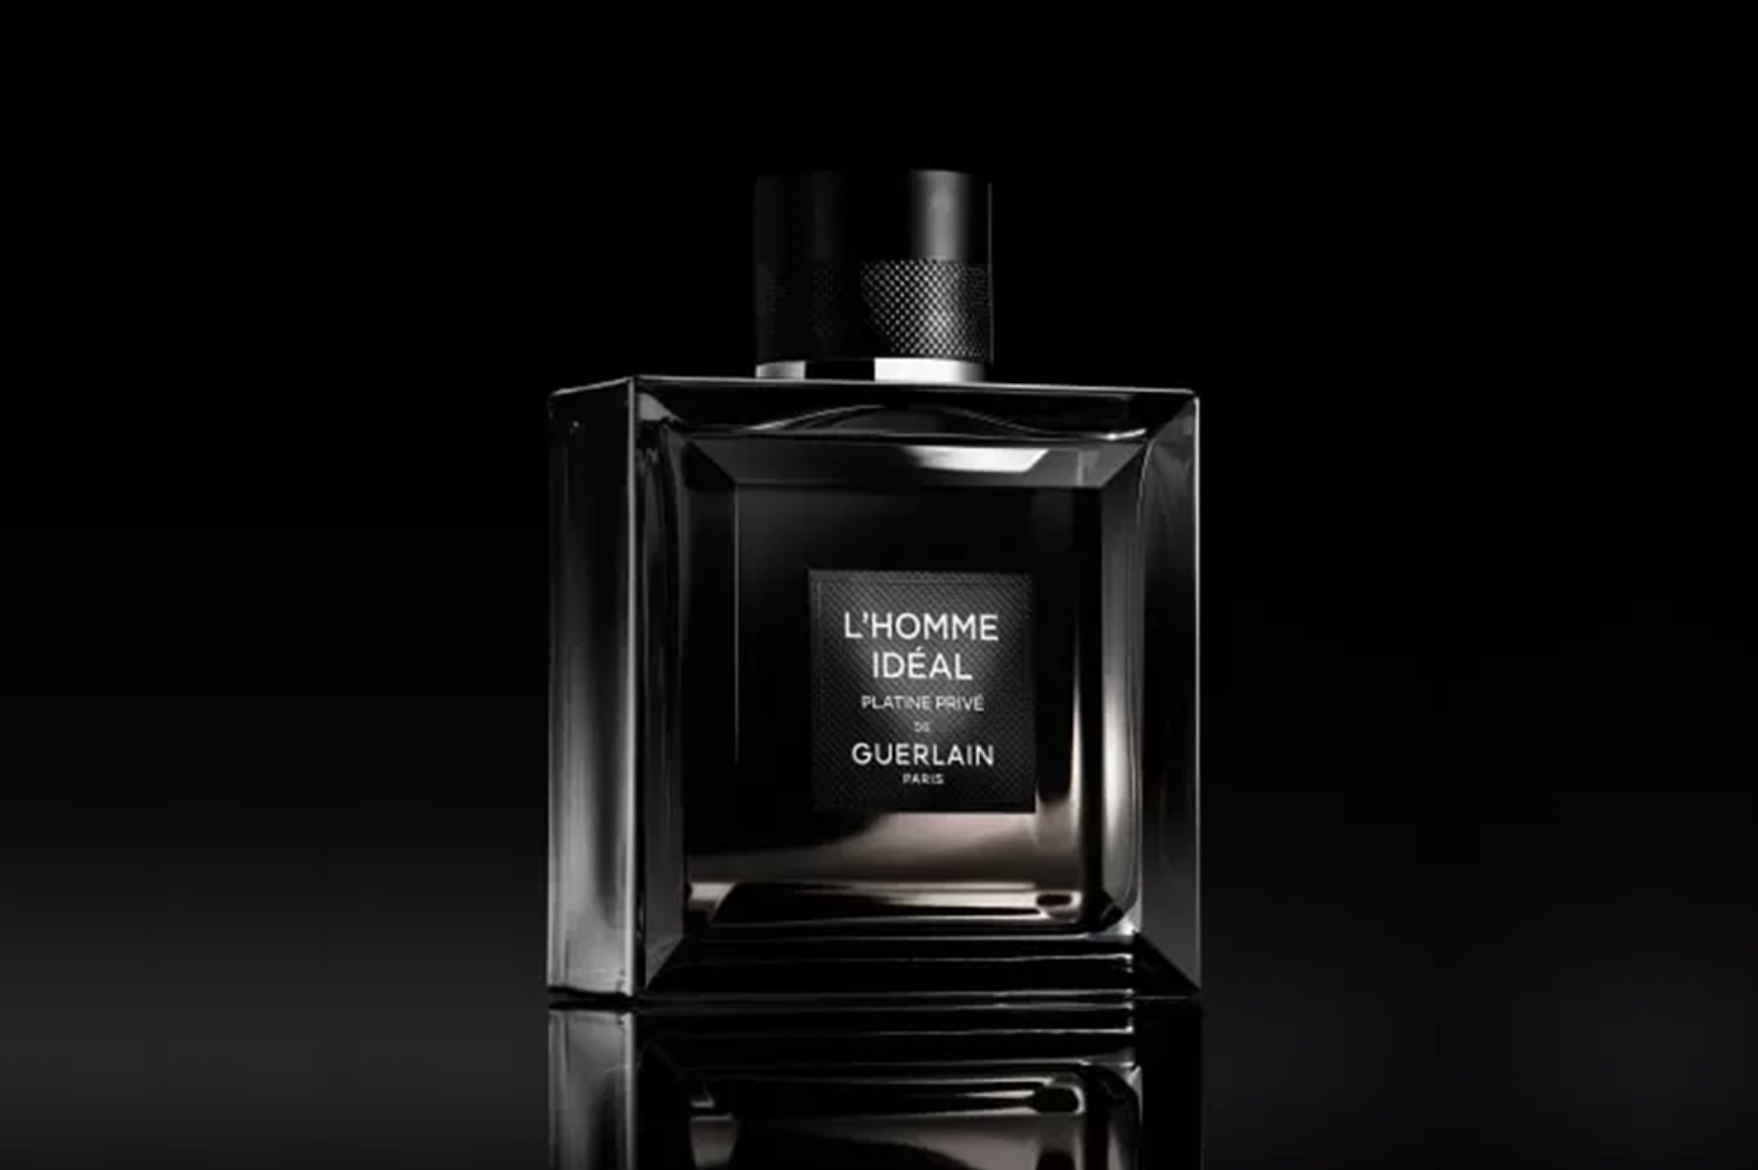 Nouveau parfum Guerlain L'homme Idéal Platine privé